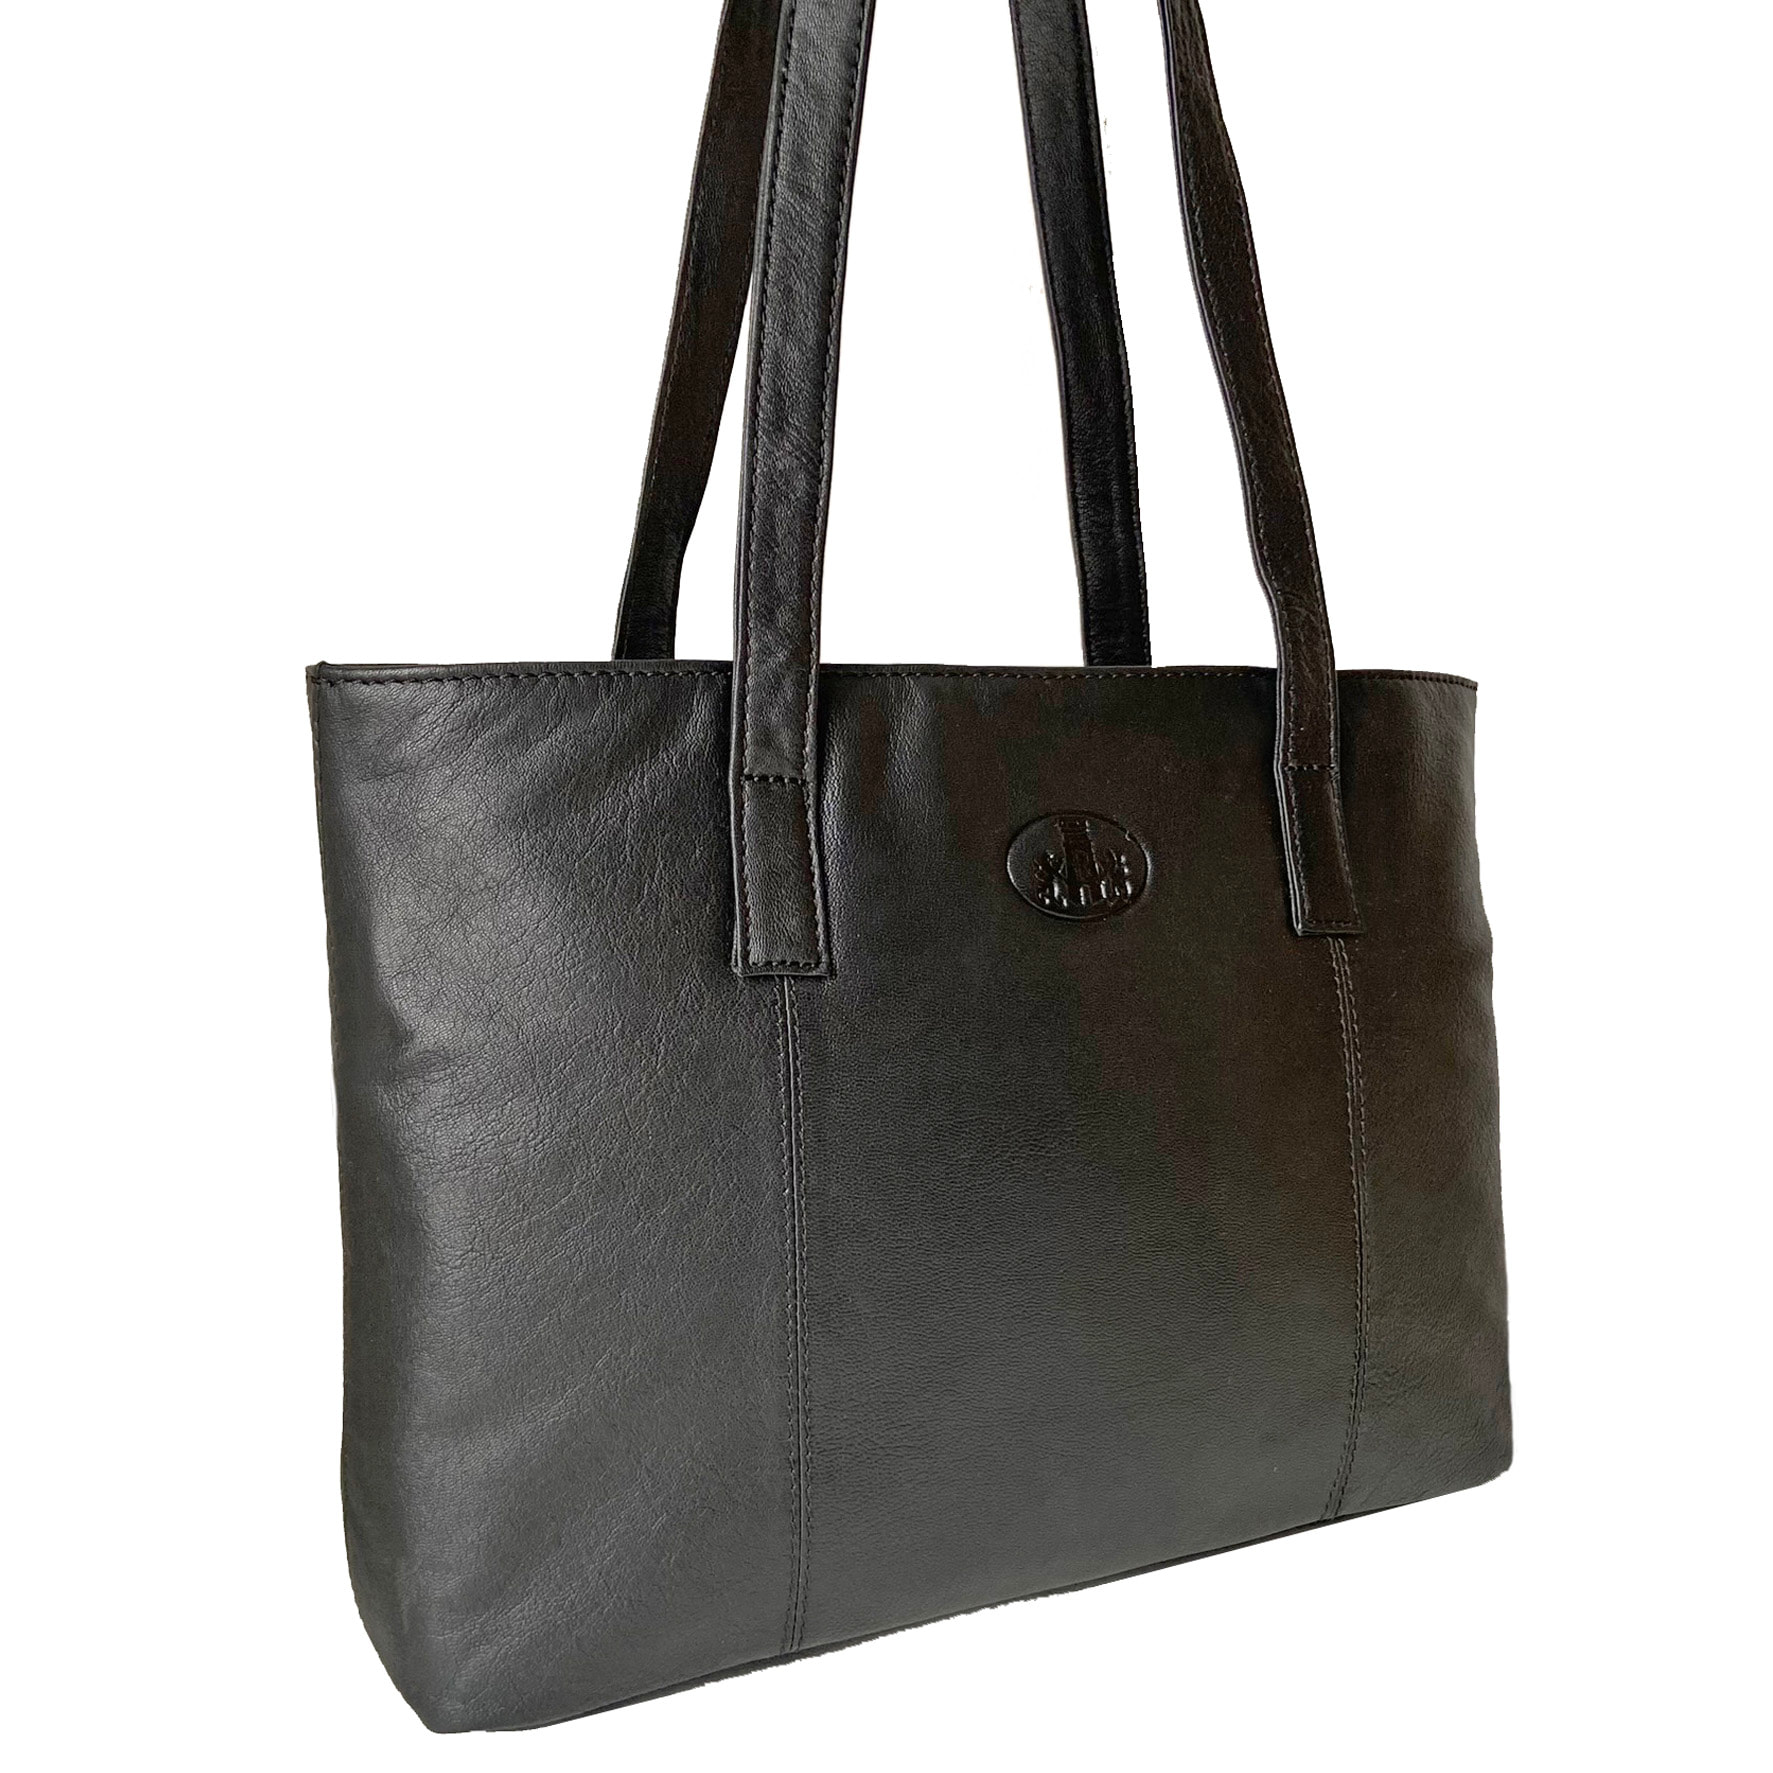 Rowallan Black Leather Shoulder Bag, Handbag